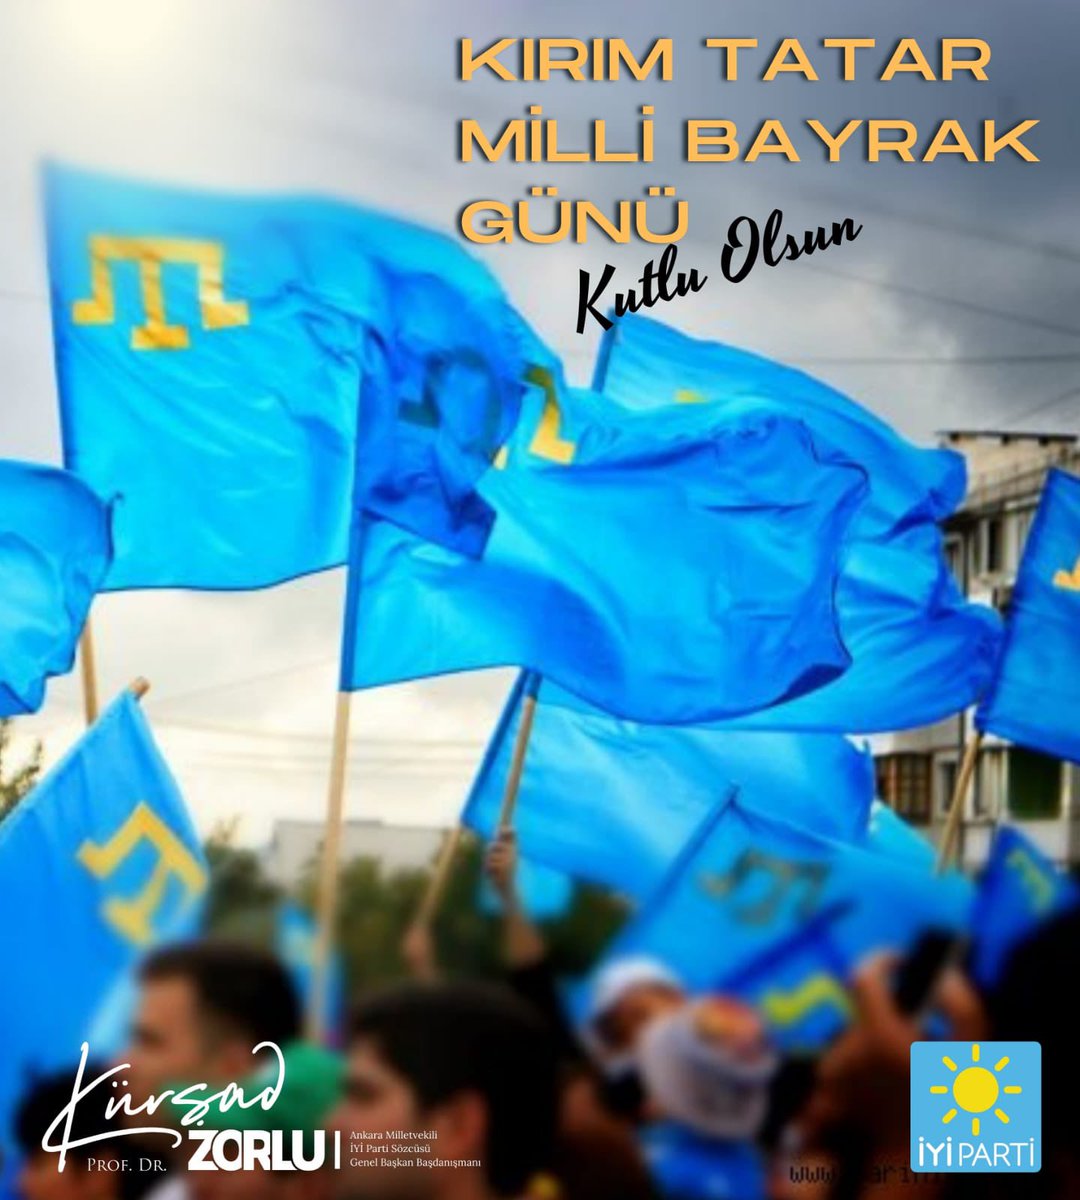 26 Haziran Kırım Tatar Milli Bayrak Günü kutlu olsun!👏

1917’de toplanan I. Kırım Tatar Milli Kurultayı’nda kabul edilen Tarak Tamgalı Gökbayrak her daim dalgalansın.

İYİ Parti olarak bundan sonra da Kırım Türklüğünün yanında olacağız…